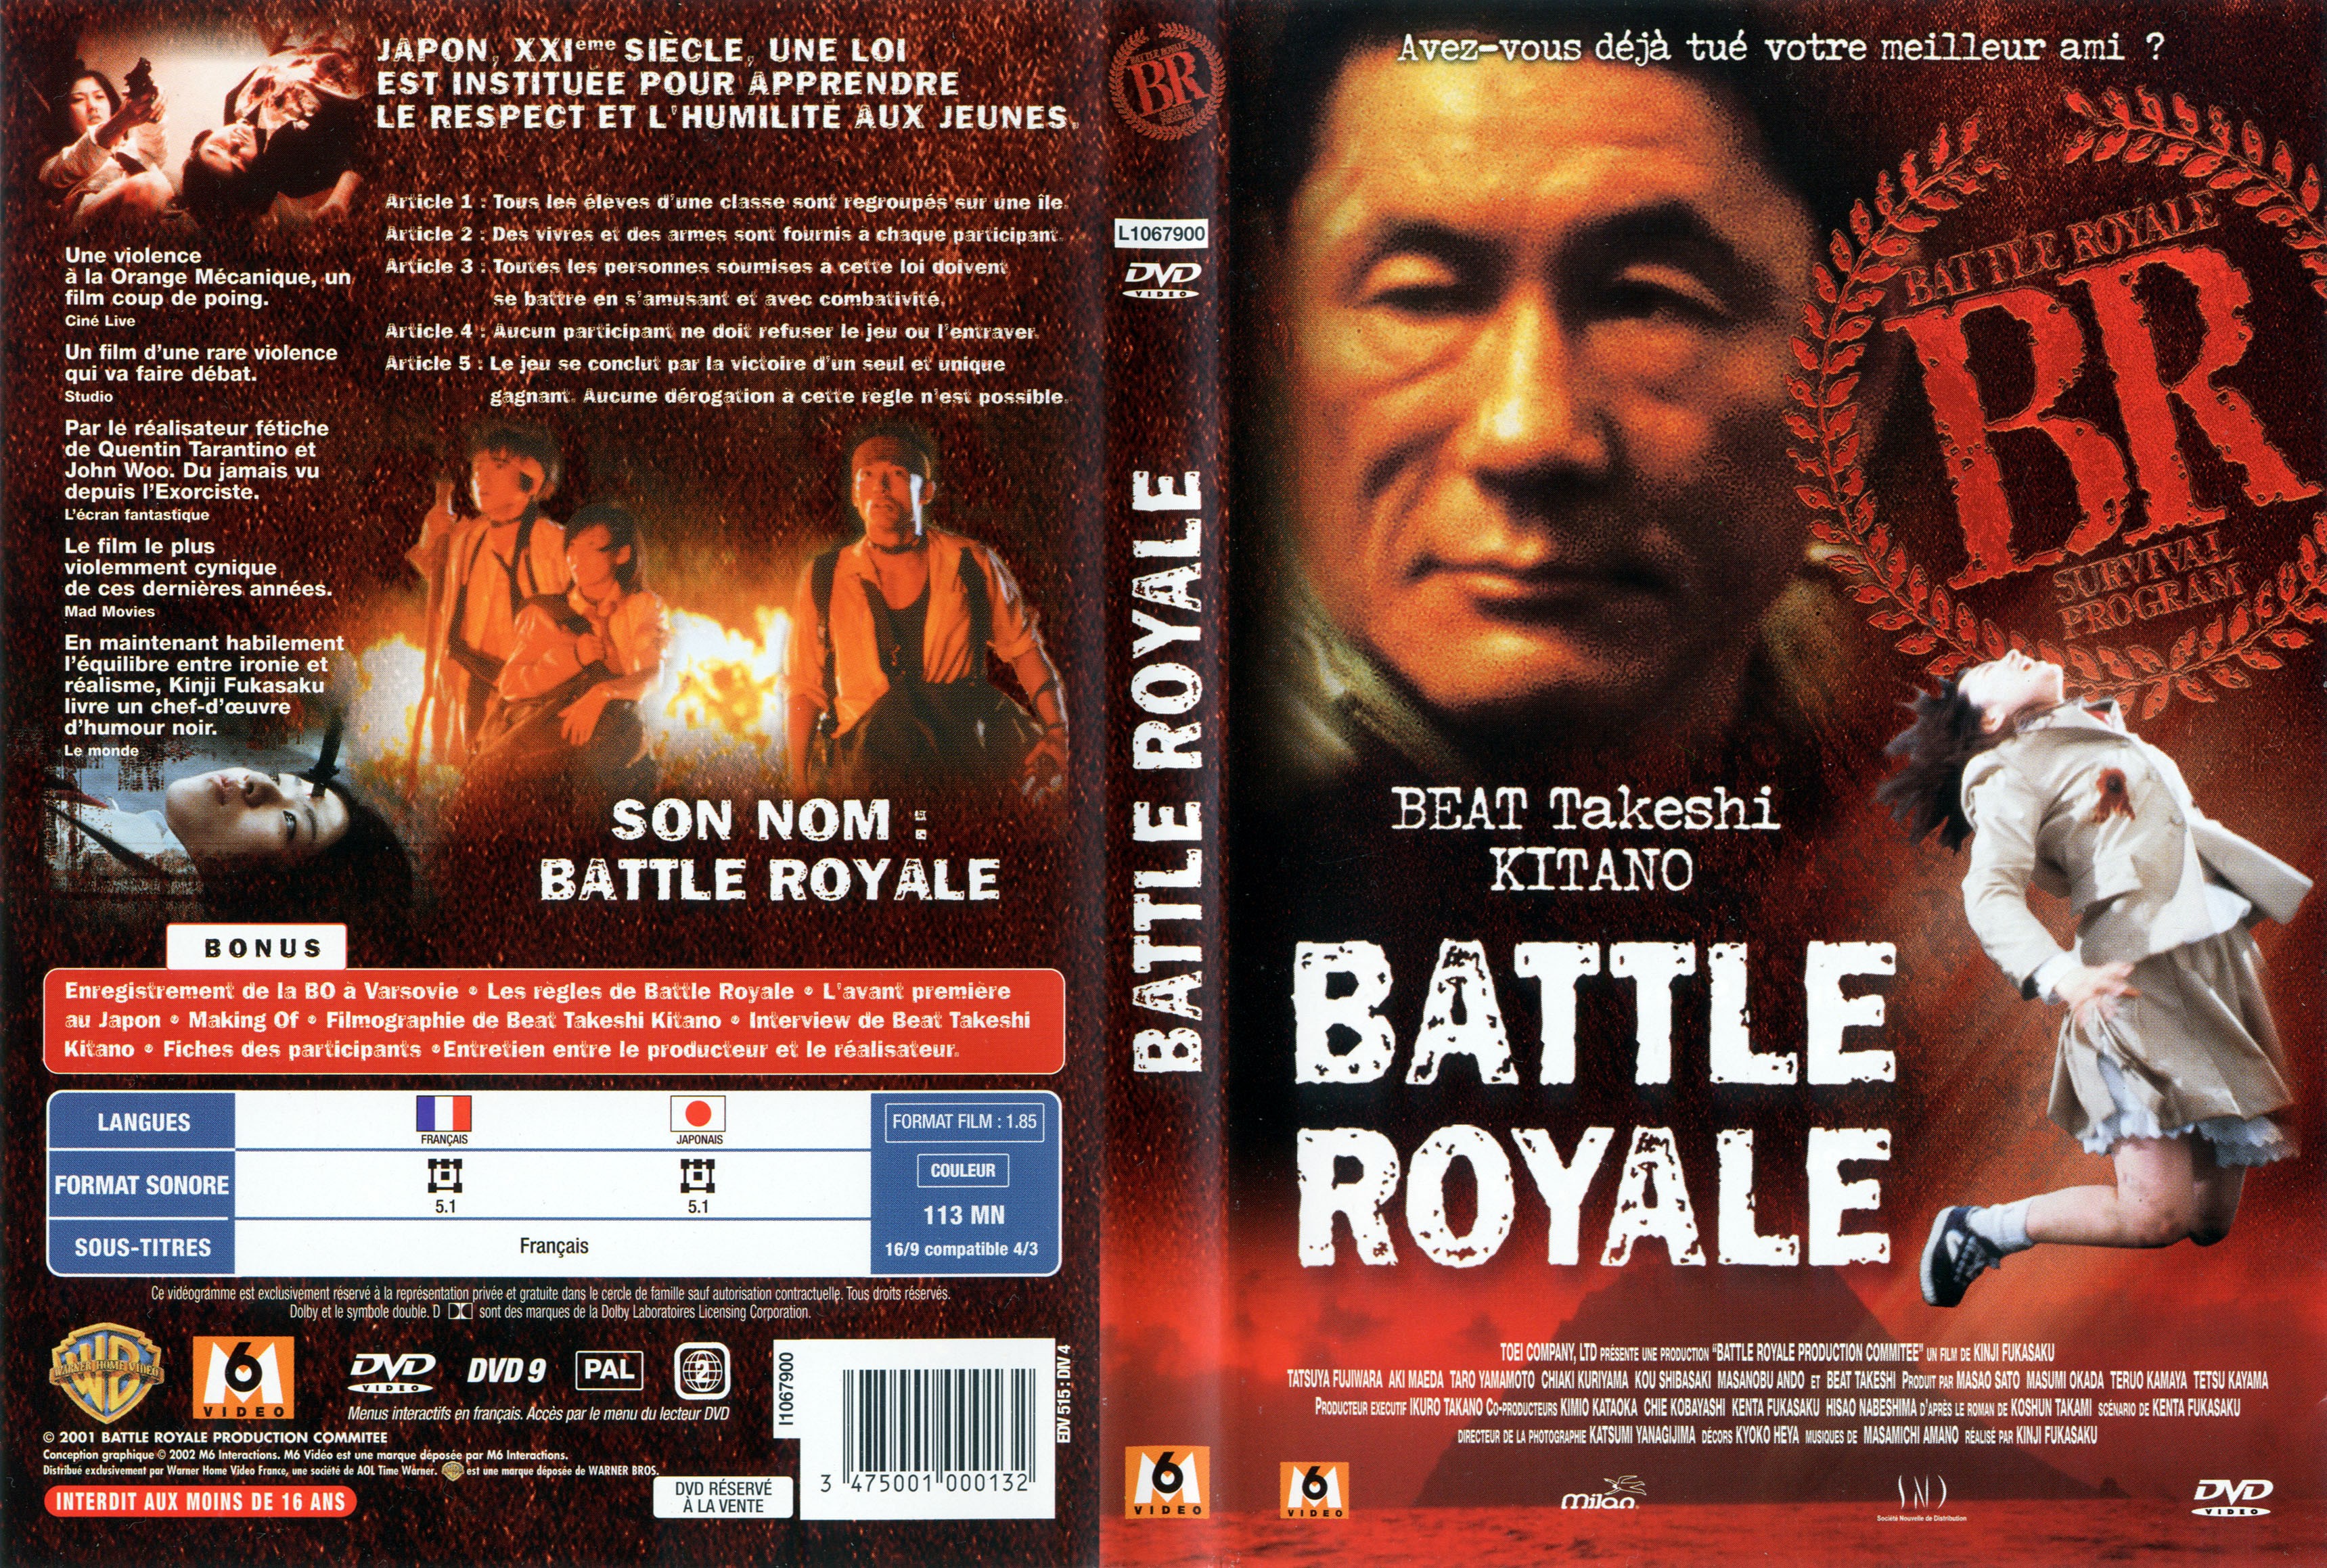 Jaquette DVD Battle royale